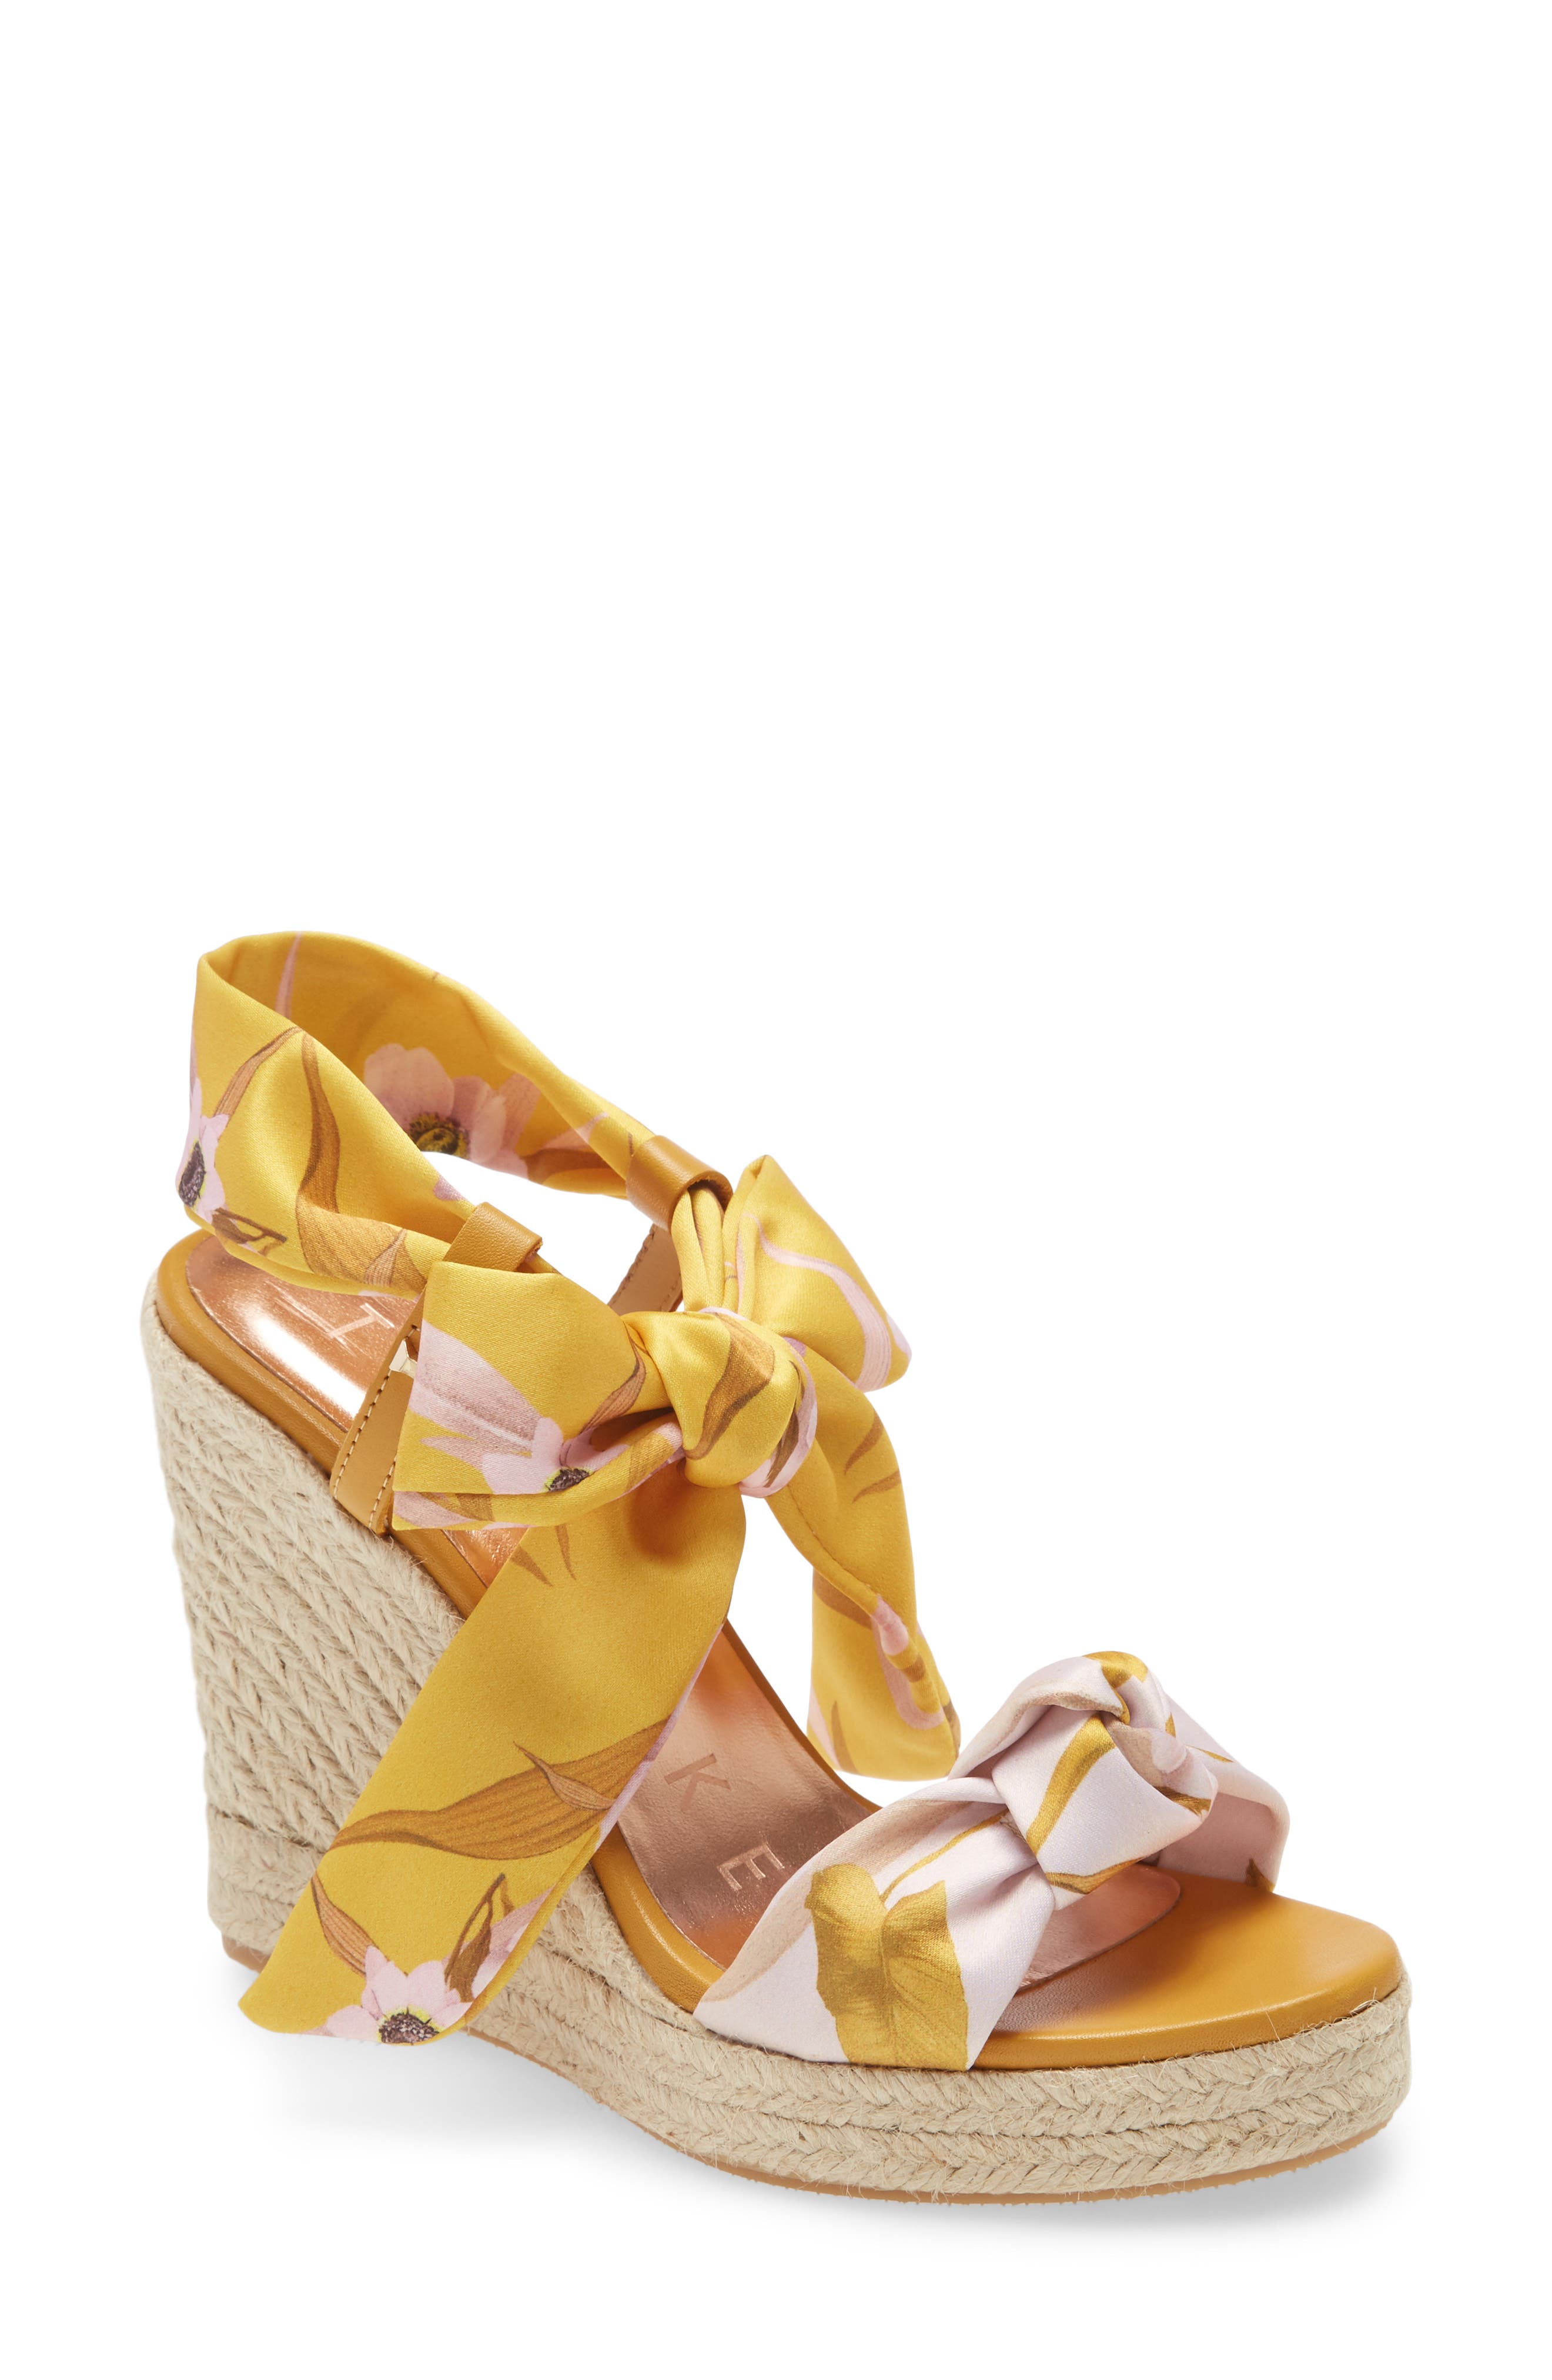 yellow wedge sandal